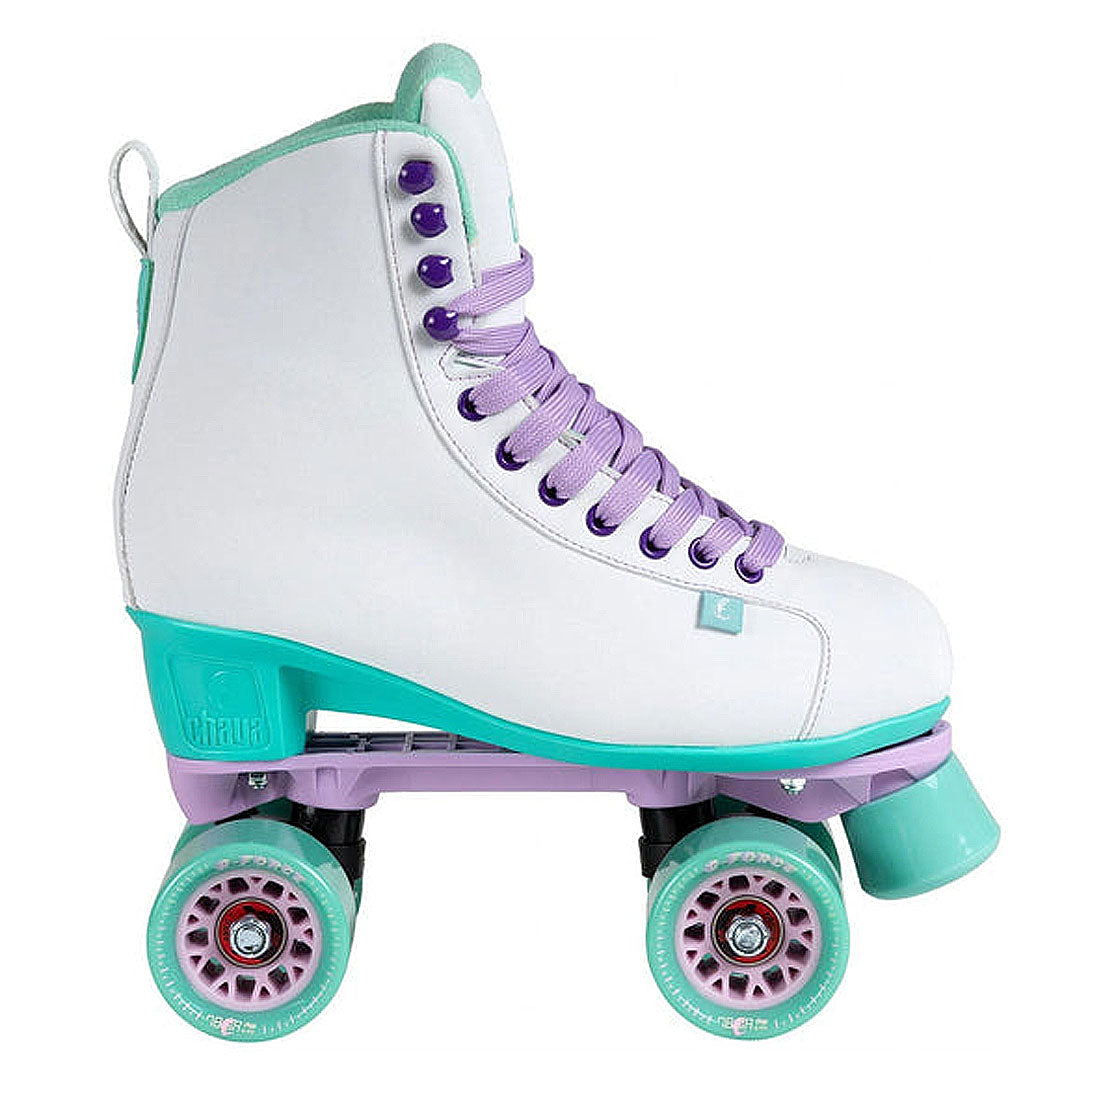 Chaya Melrose Skate - White/Teal Roller Skates